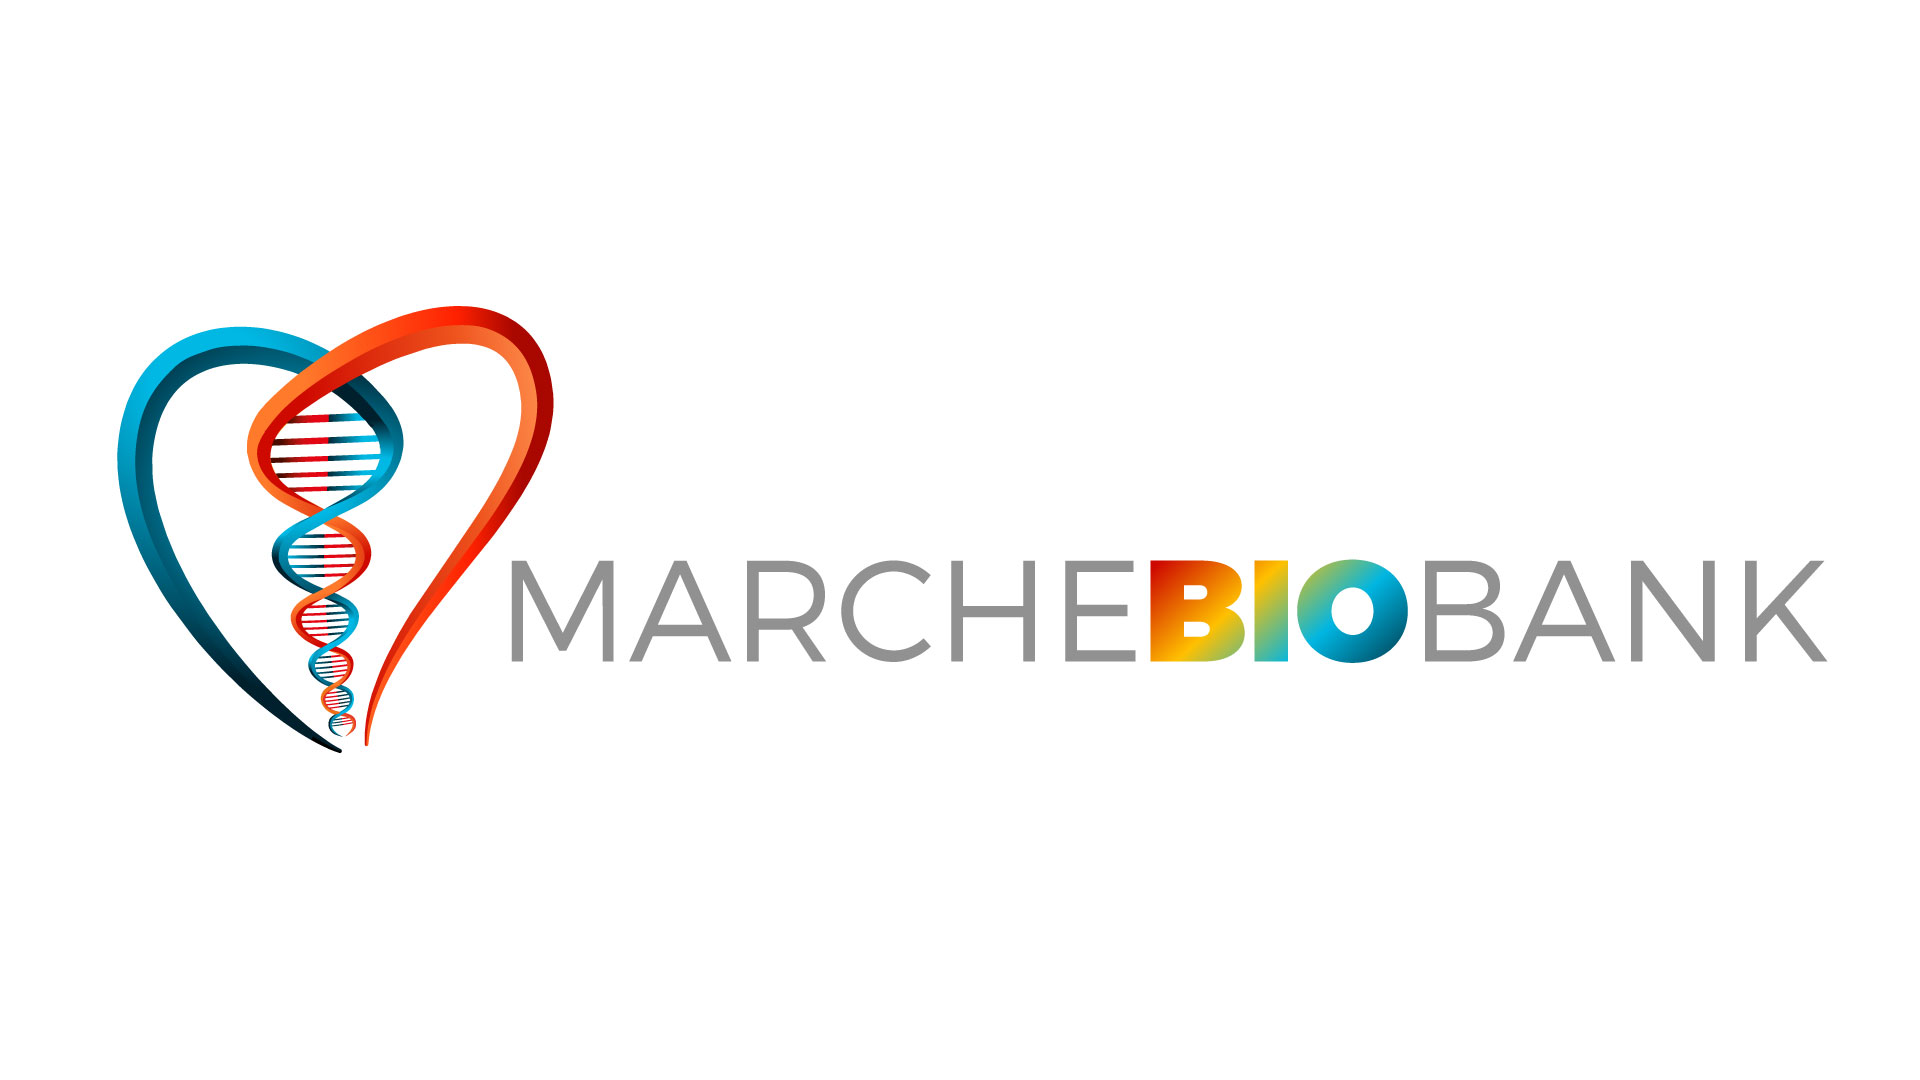 Marche BioBank